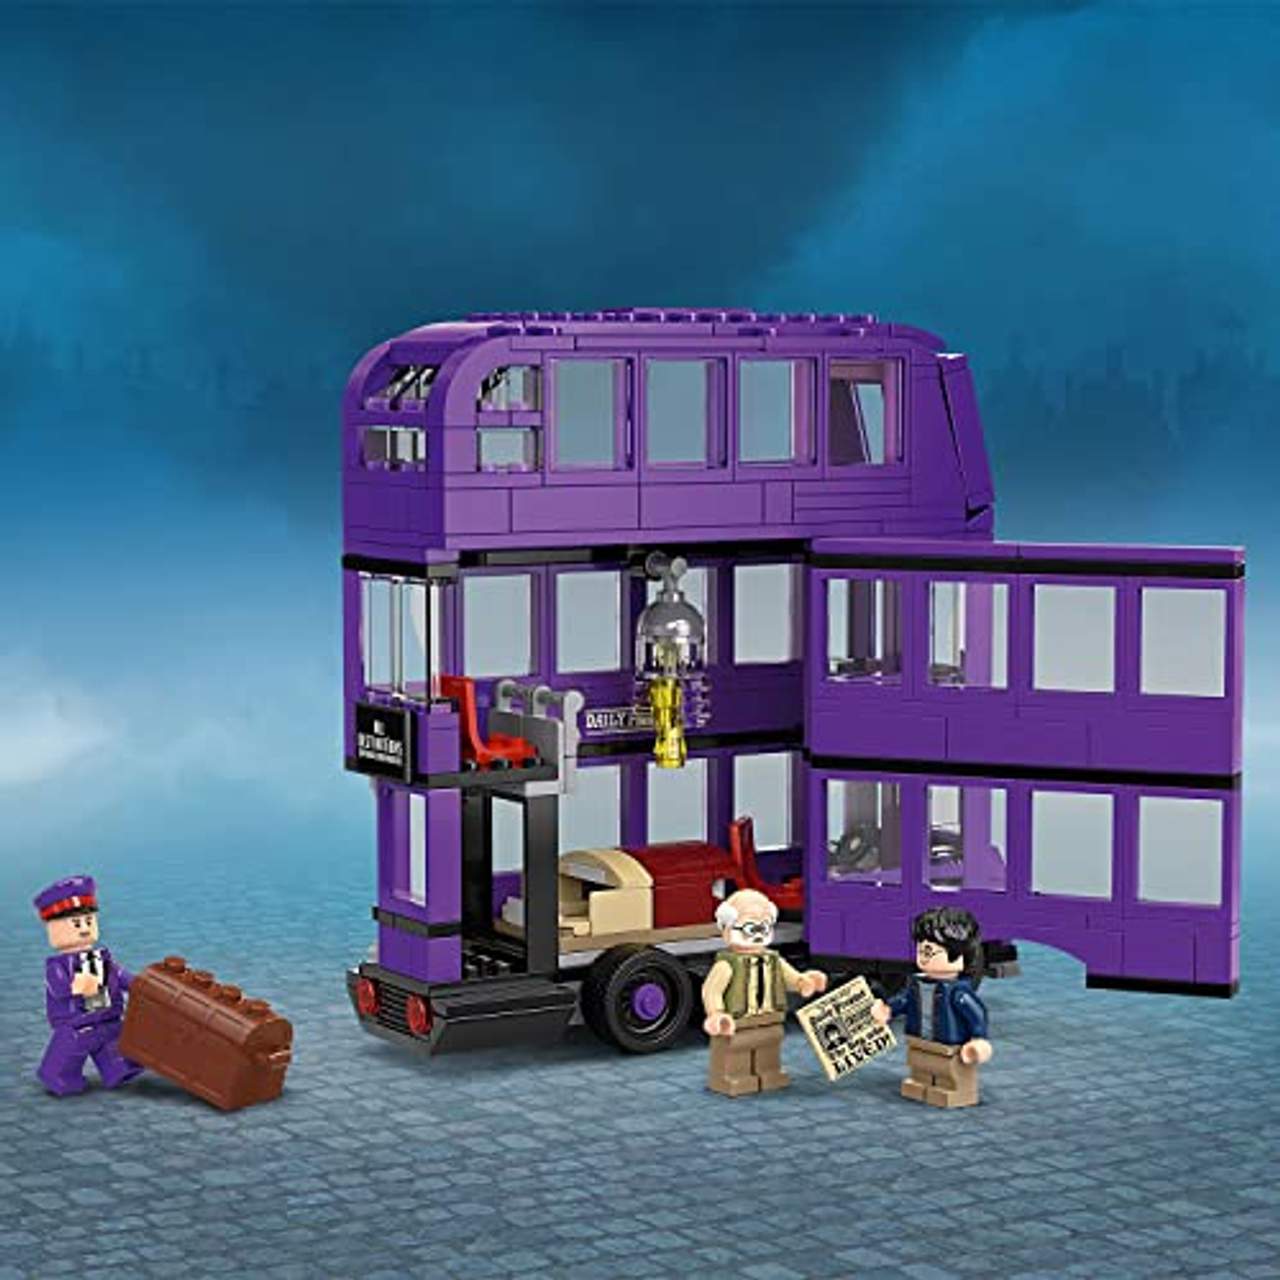 LEGO Harry Potter und der Gefangene von Askaban